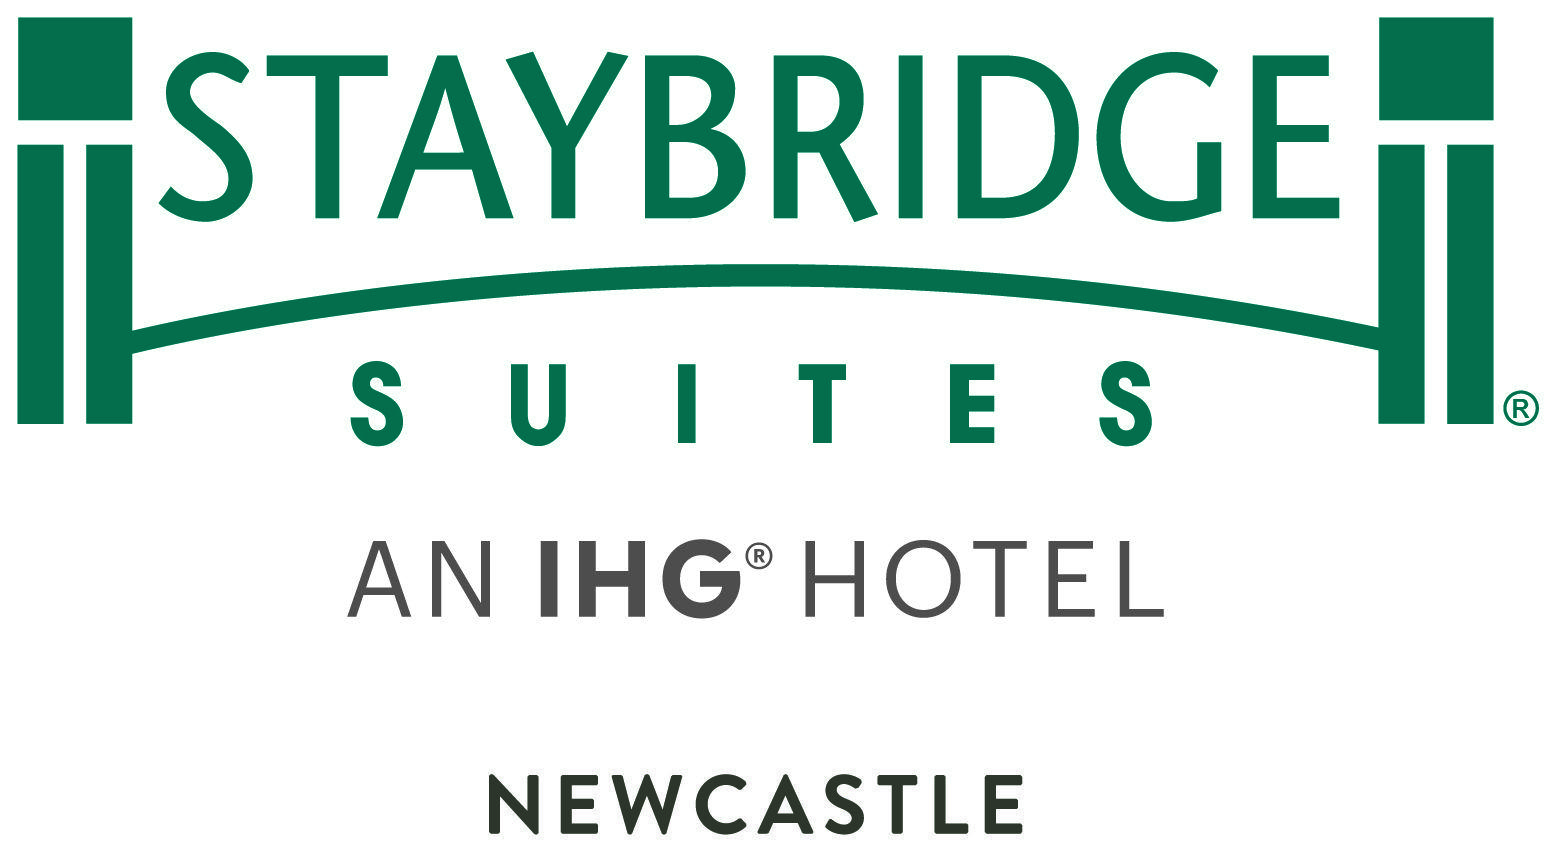 Staybridge Logo - Staybridge Suites Newcastle Group UK